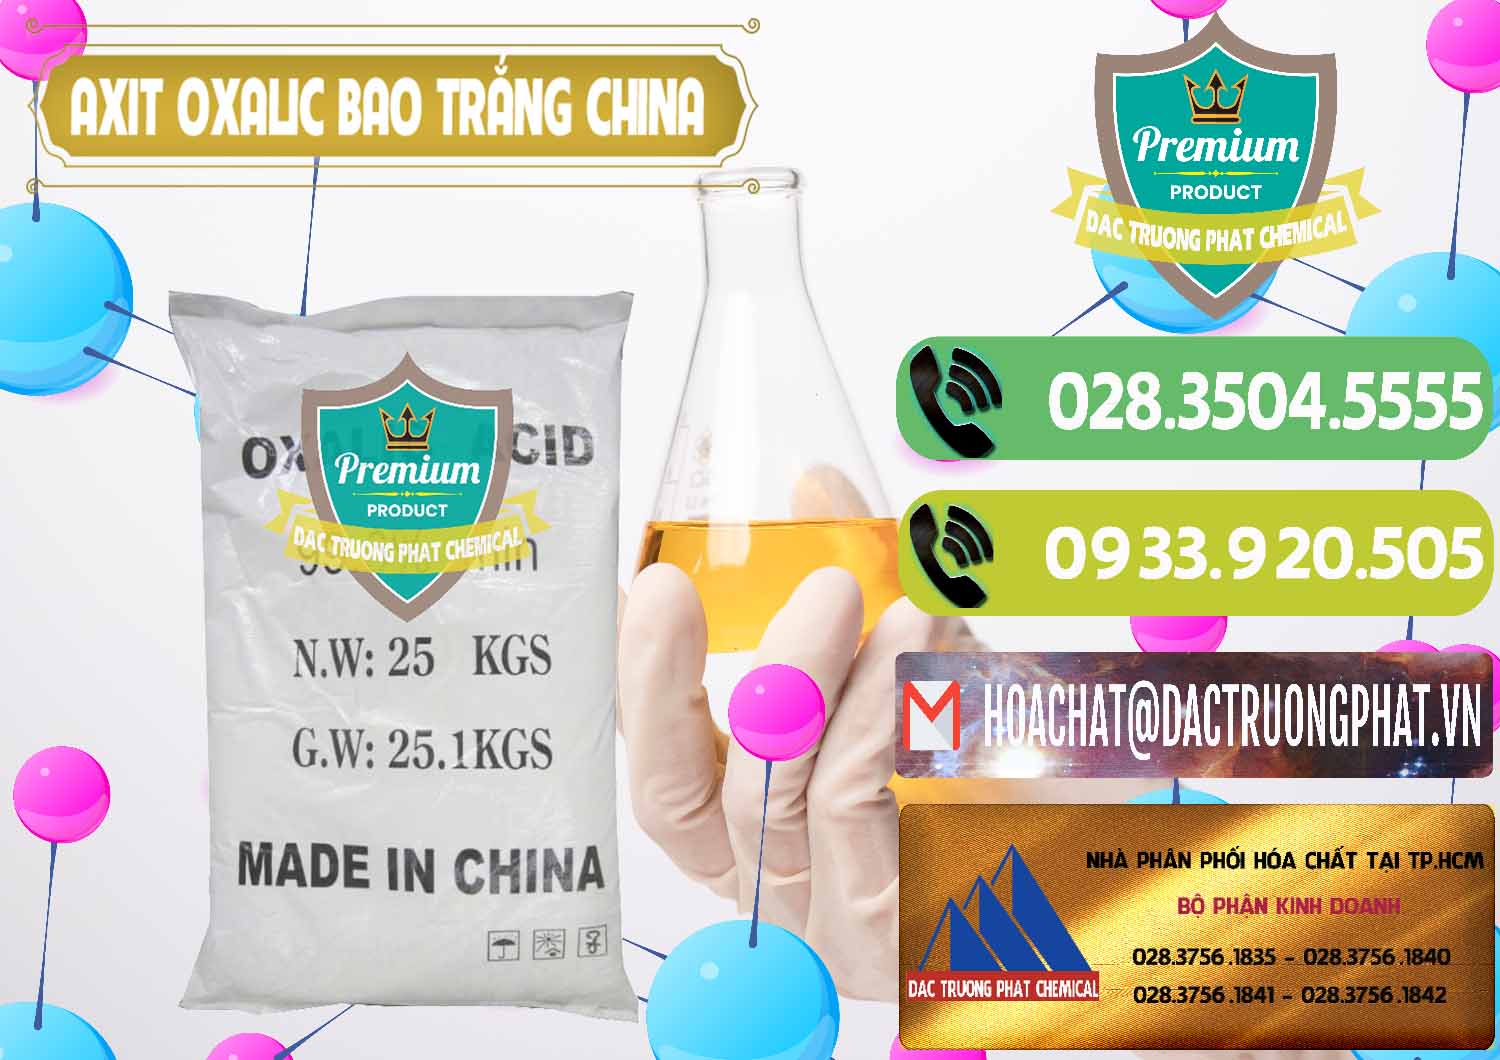 Cty cung cấp ( bán ) Acid Oxalic – Axit Oxalic 99.6% Bao Trắng Trung Quốc China - 0270 - Cty chuyên nhập khẩu & cung cấp hóa chất tại TP.HCM - hoachatmientay.vn